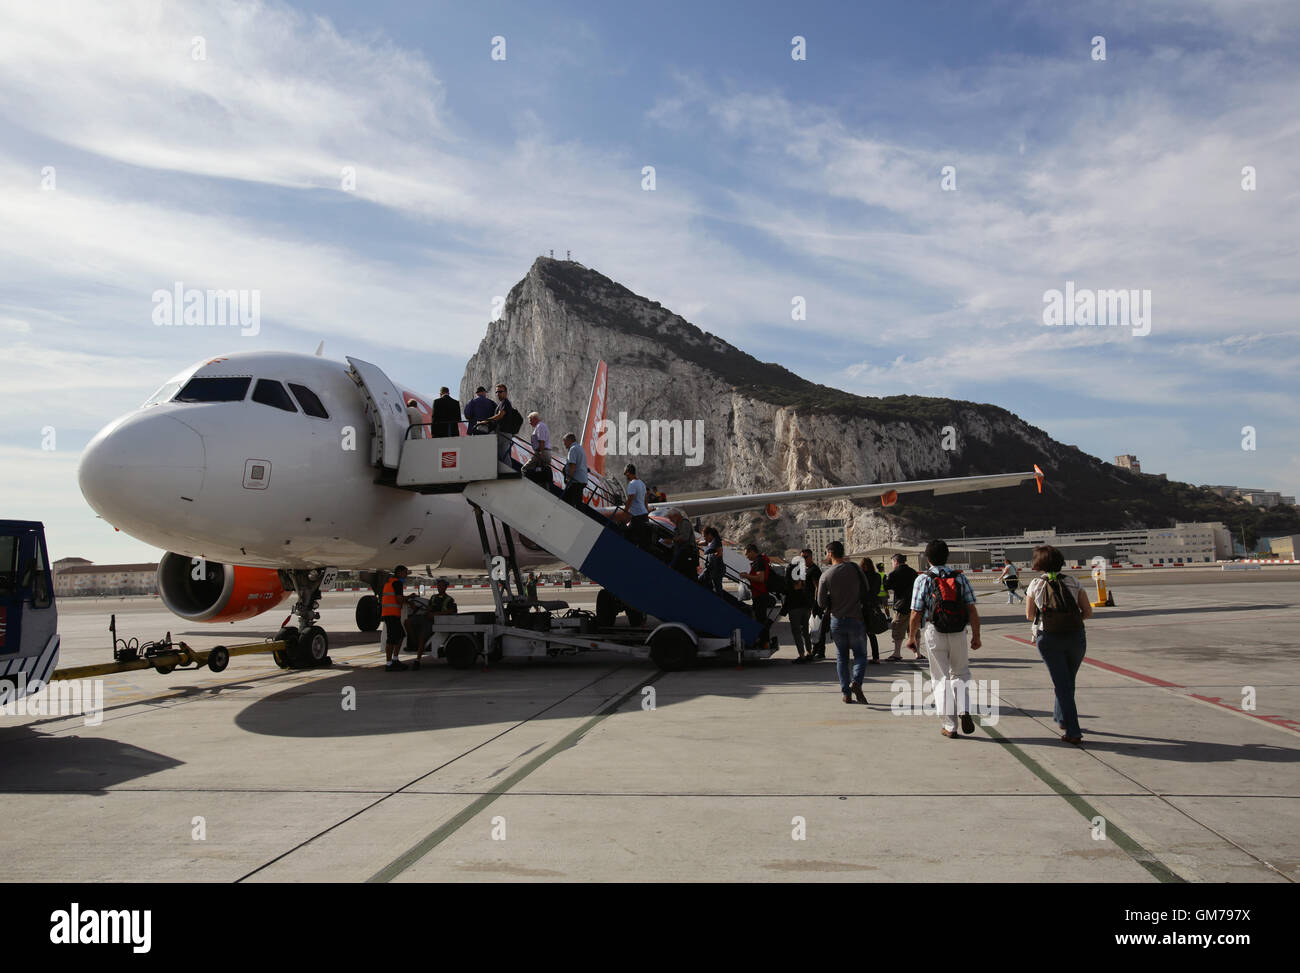 Passagiere, die ein EasyJet Flugzeug auf der Landebahn des Flughafen von Gibraltar, vor dem Hintergrund der Felsen von Gibraltar. PRESSEVERBAND Foto. Bild Datum: Freitag, 11. September 2015. Bildnachweis sollte lauten: Yui Mok/PA Wire Stockfoto